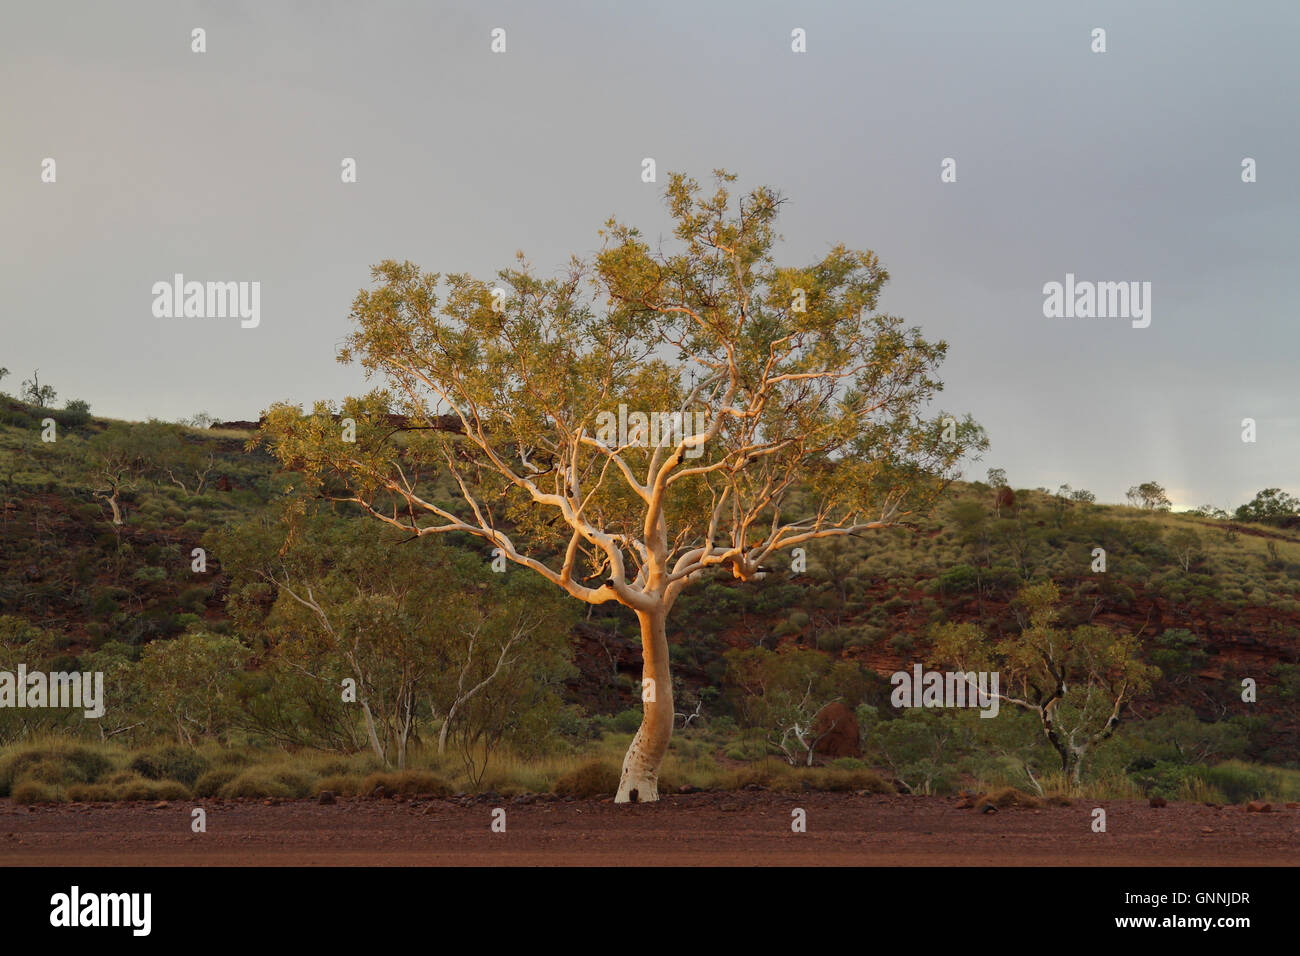 Baum im Outback mit dem typischen roten Sand, Western Australia - Australien Stockfoto